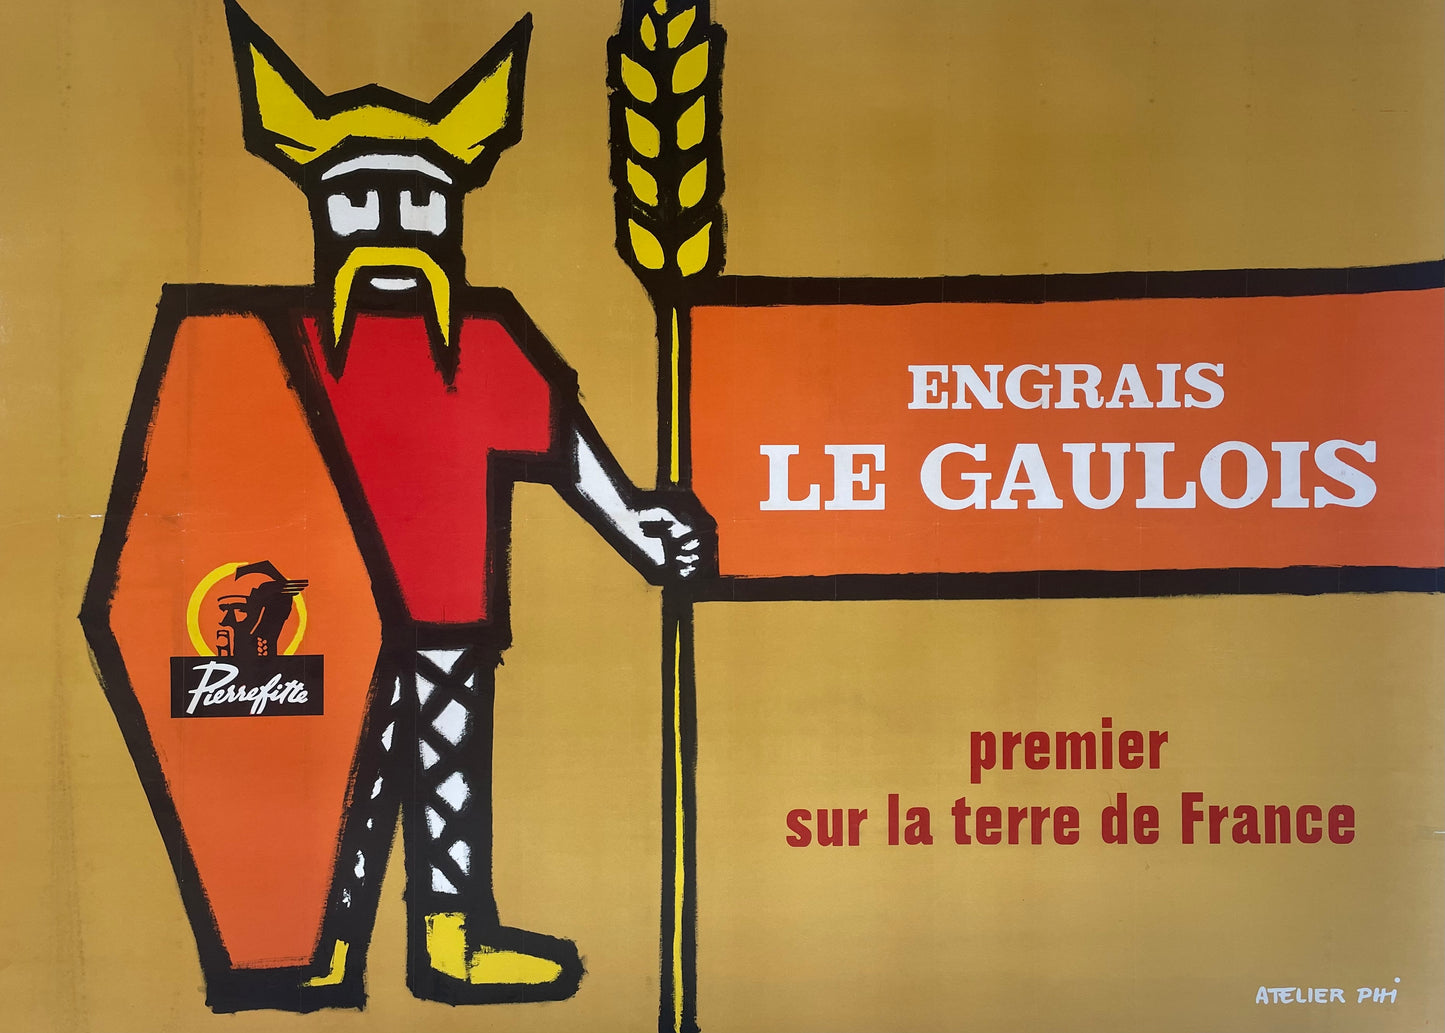 Engrais Le Gaulois by Atelier Phi